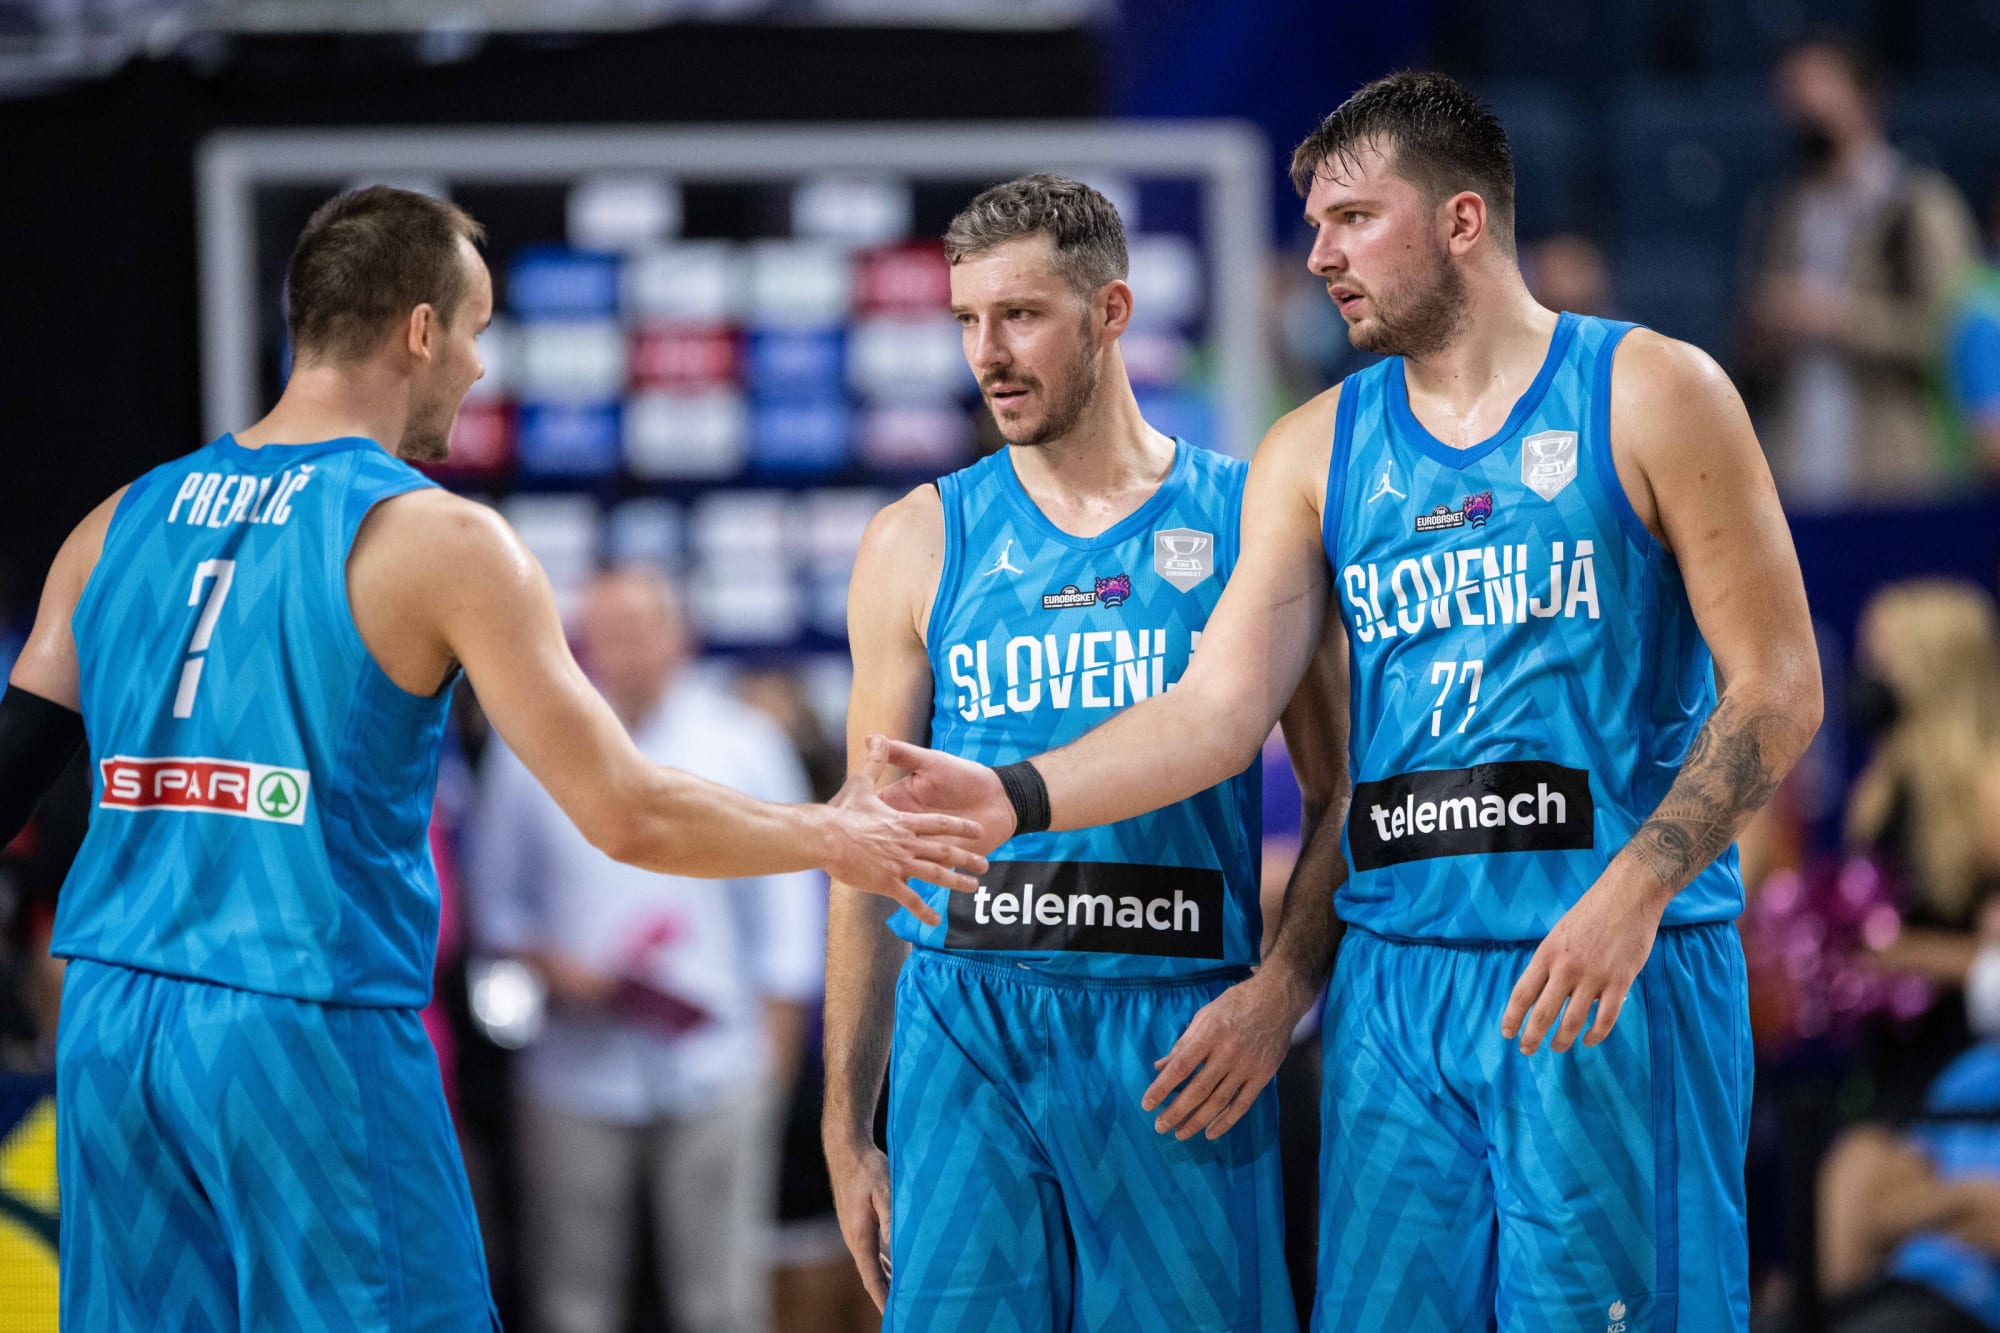 Doncic en Dragic naar kwartfinales EuroBasket met overwinning op België